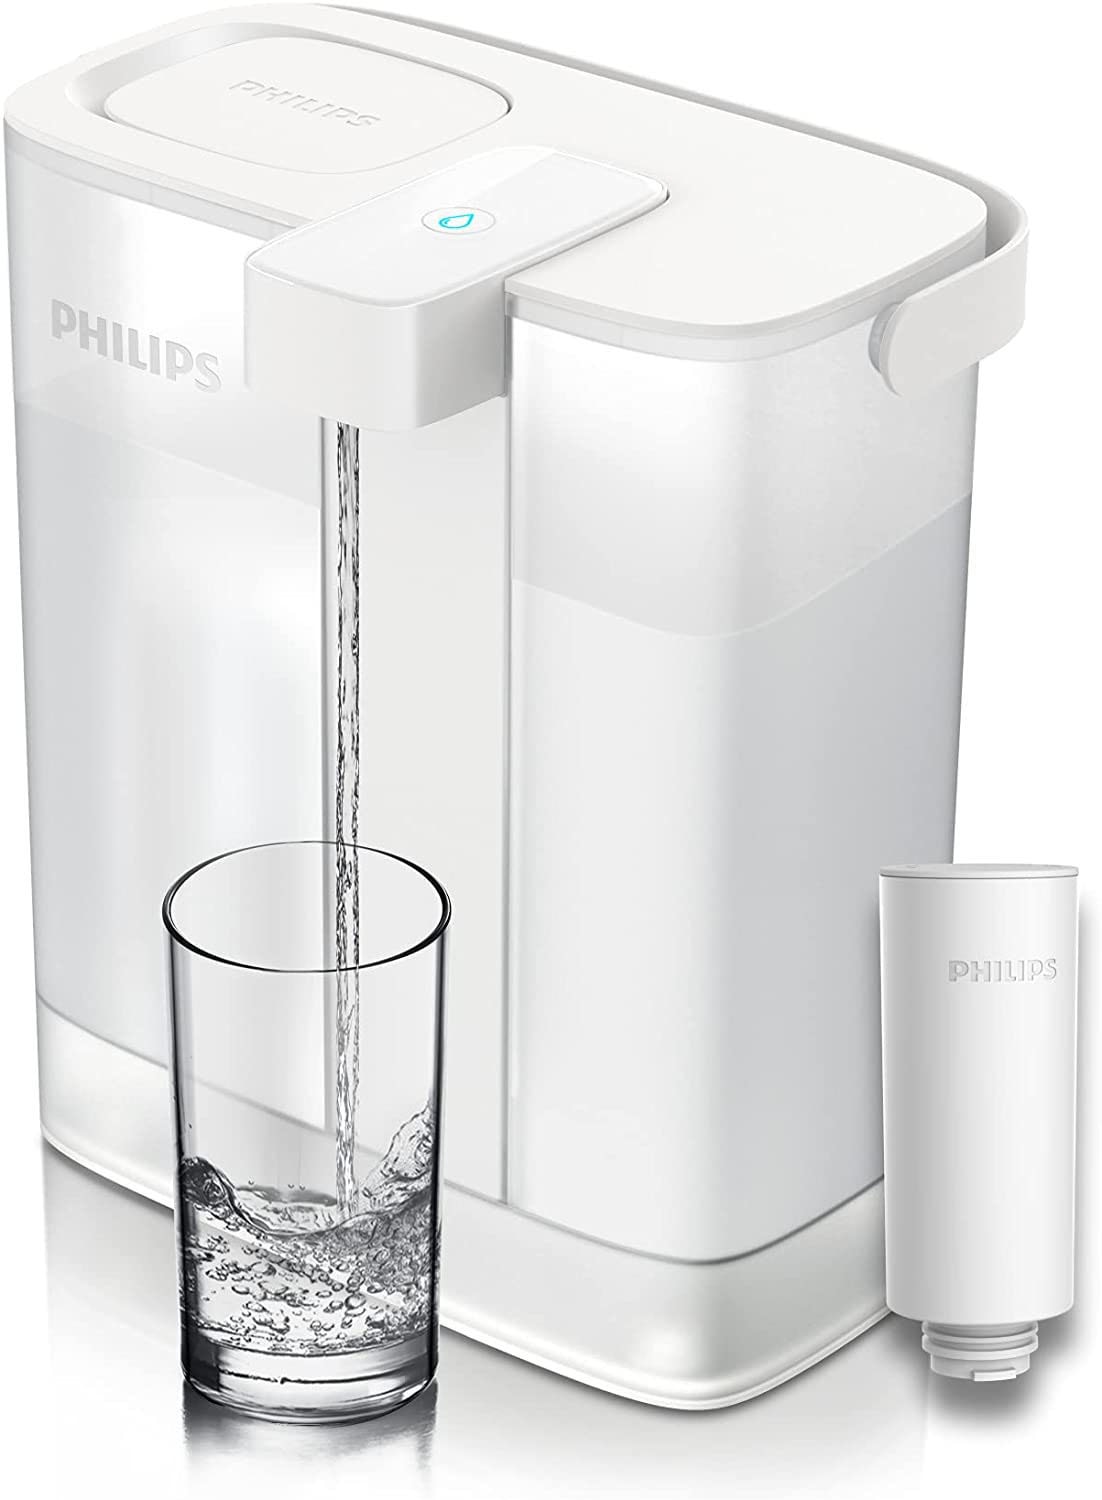 Philips Wasserfilter »(Filterkartusche für Sofort-Wasserfilter)«, reduziert ua. Chlor, Blei, Pestizide, Mikroplastik,  3 l Fassungsvermögen, 1 l/min schneller Durchfluss, wiederaufladbar über USB-C